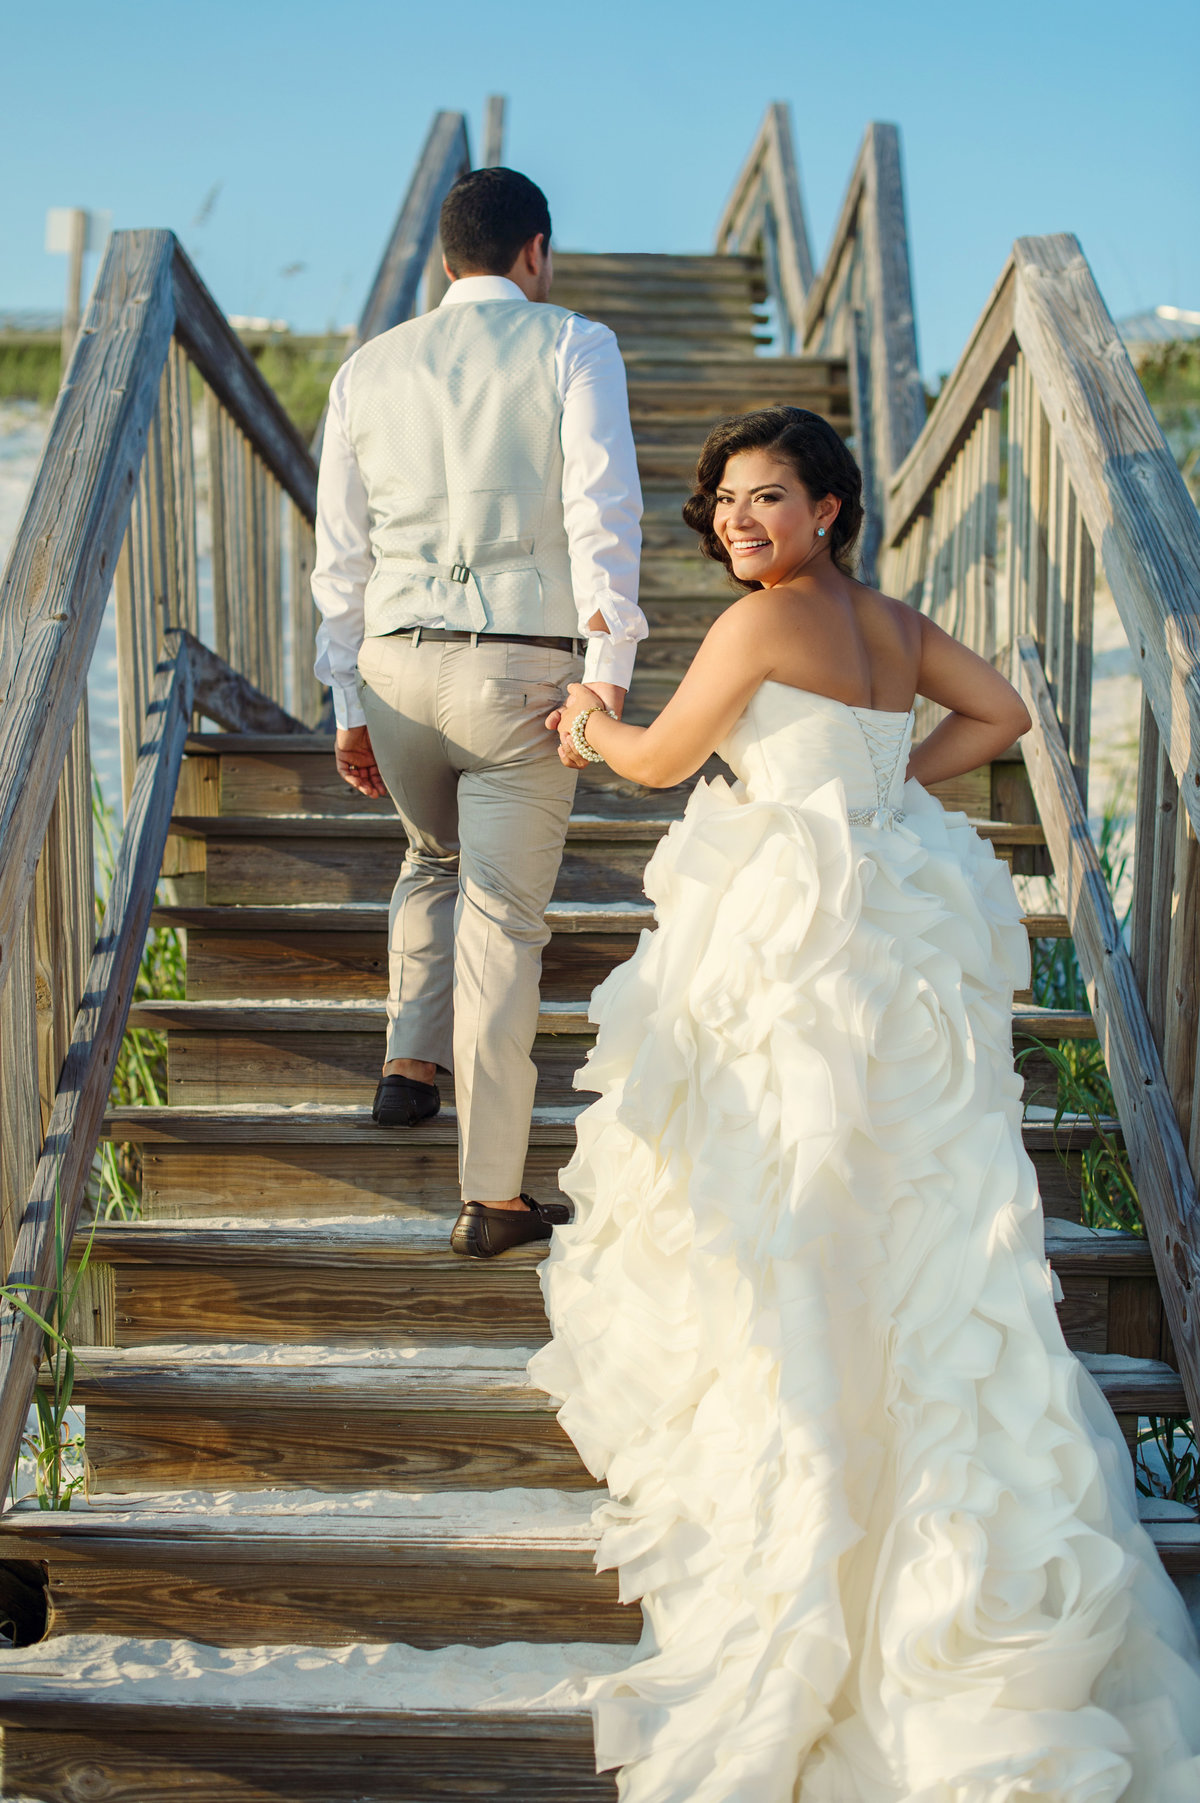 beach wedding photos in Destin Florida